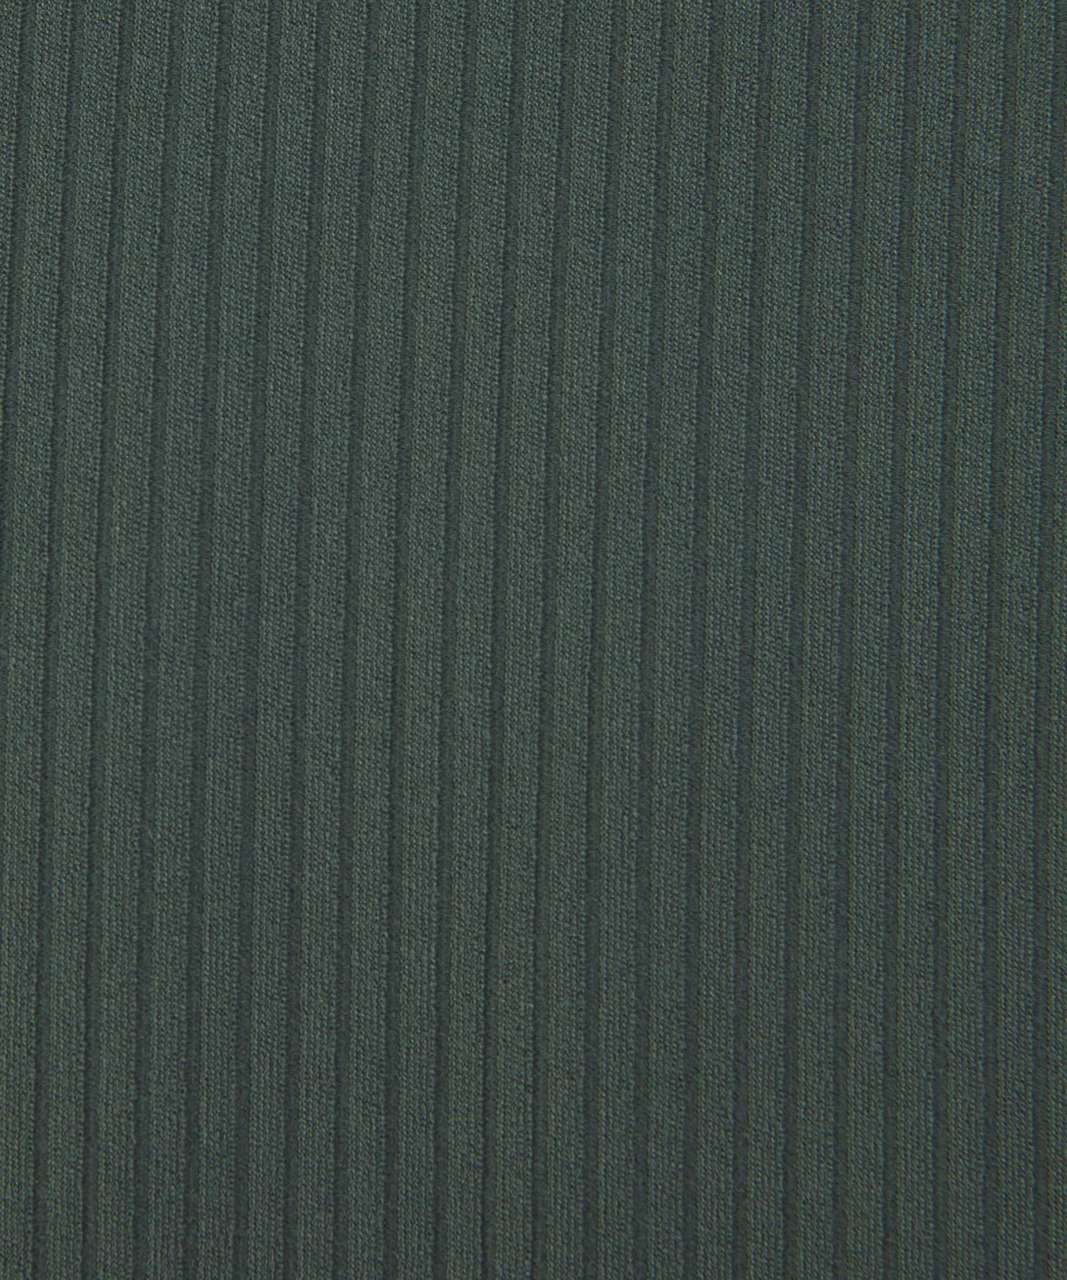 lululemon lululemon Align™ Ribbed Mini-Flared Pant Extra Short $128.00